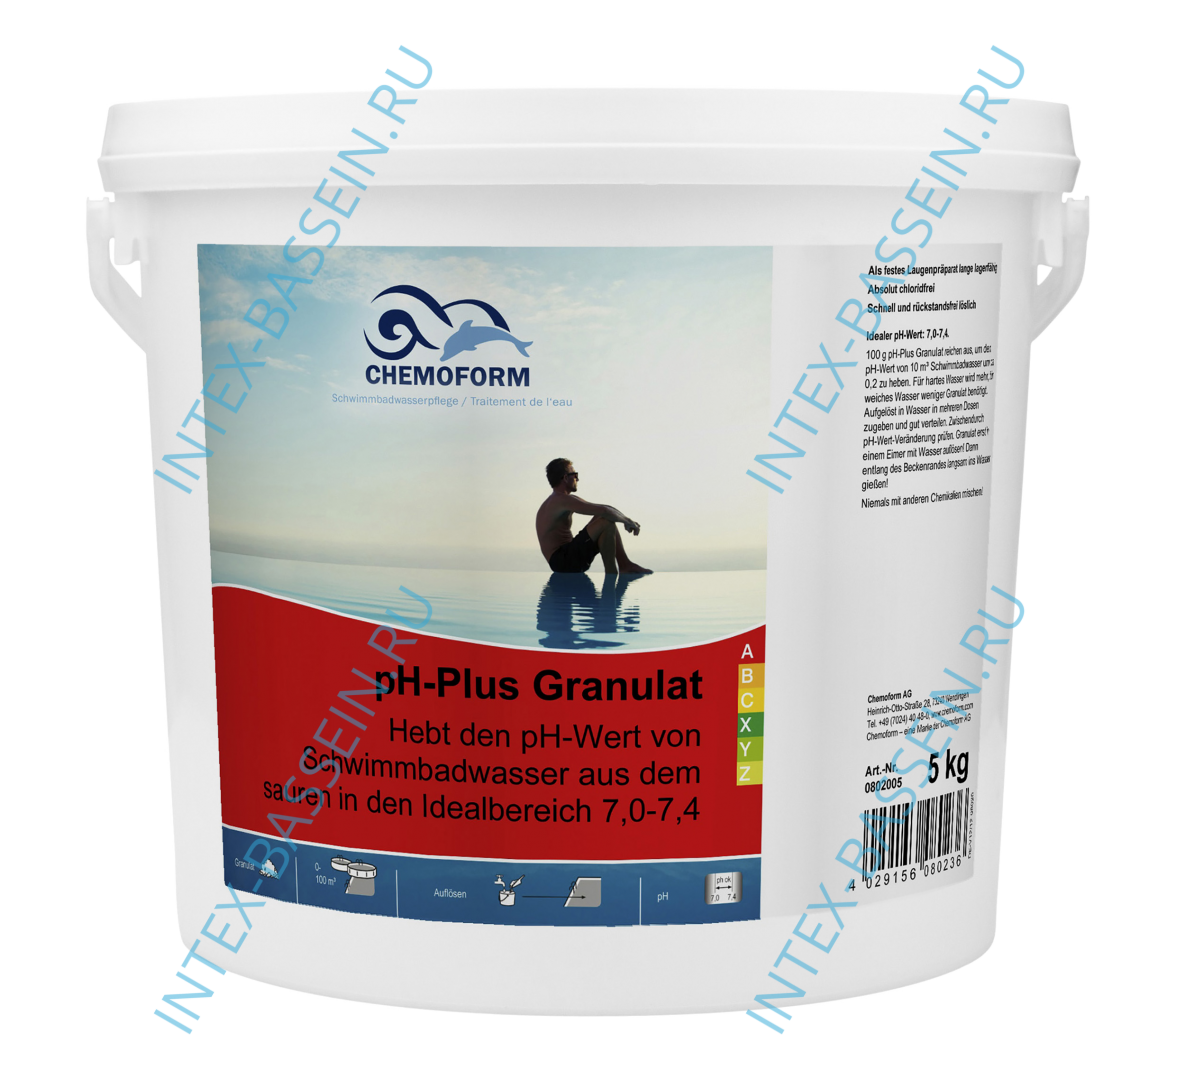 Уменьшитель уровня pH гранулированный Chemoform Ph-плюс 5 кг, артикул 0802005